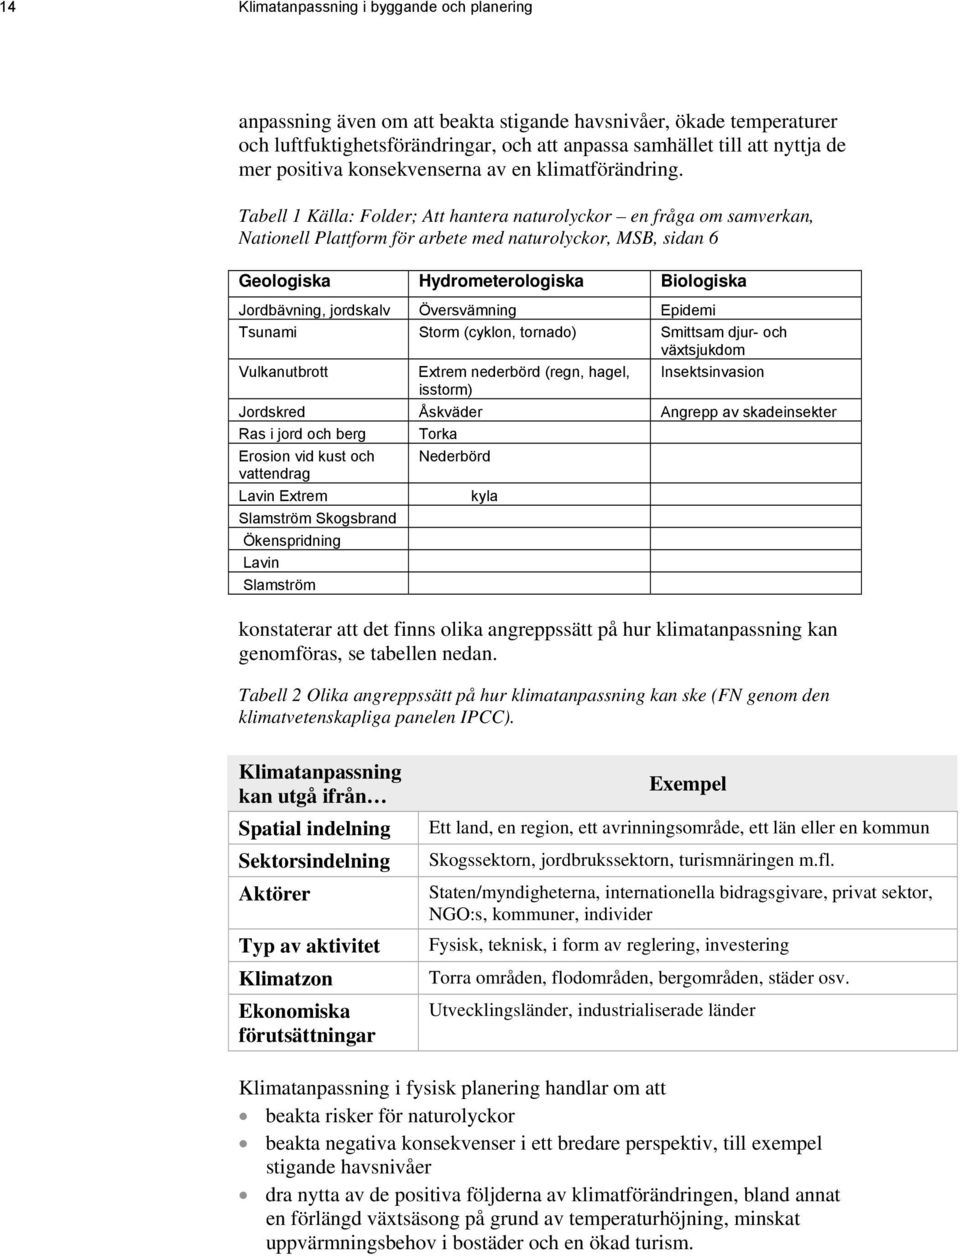 Tabell 1 Källa: Folder; Att hantera naturolyckor en fråga om samverkan, Nationell Plattform för arbete med naturolyckor, MSB, sidan 6 Geologiska Hydrometerologiska Biologiska Jordbävning, jordskalv